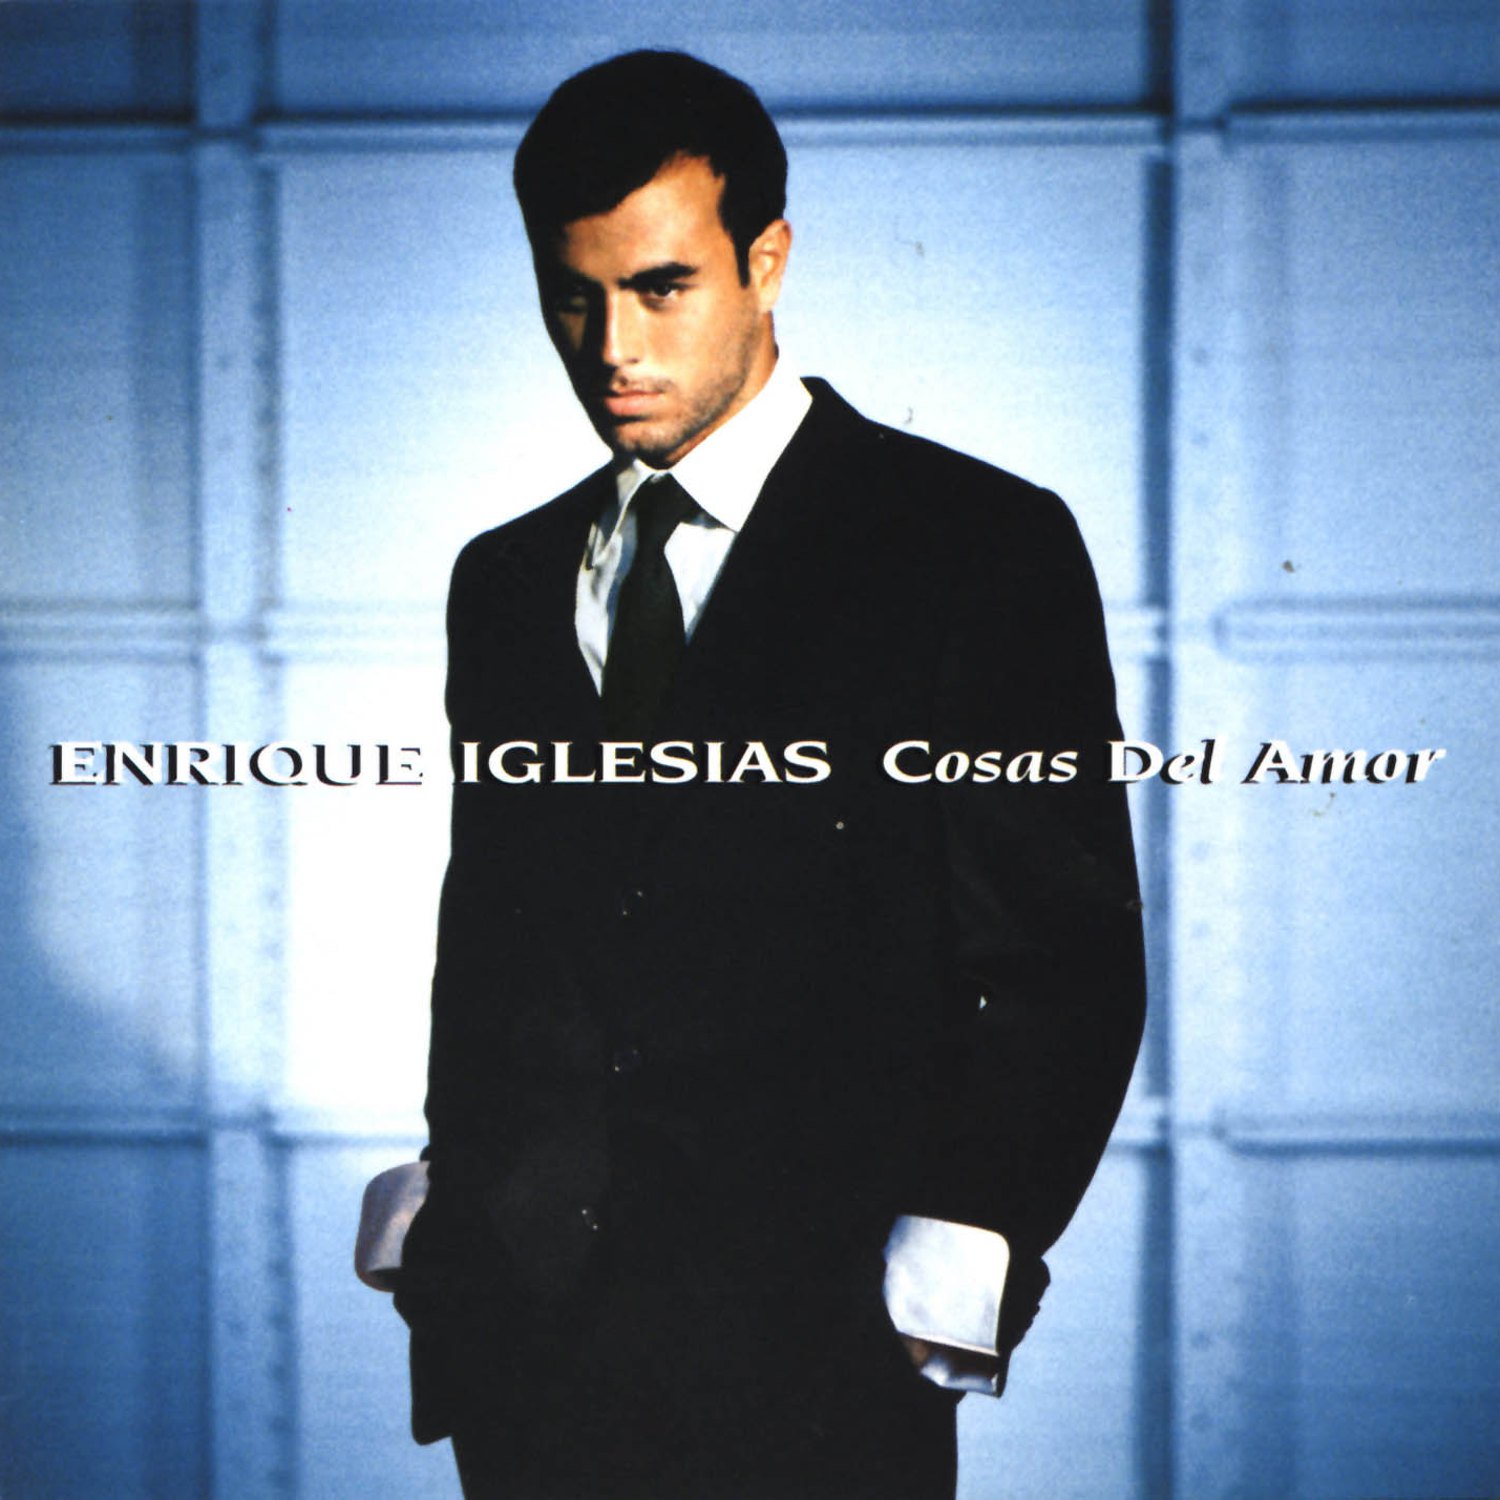 Enrique Iglesias Cosas Del Amor cover